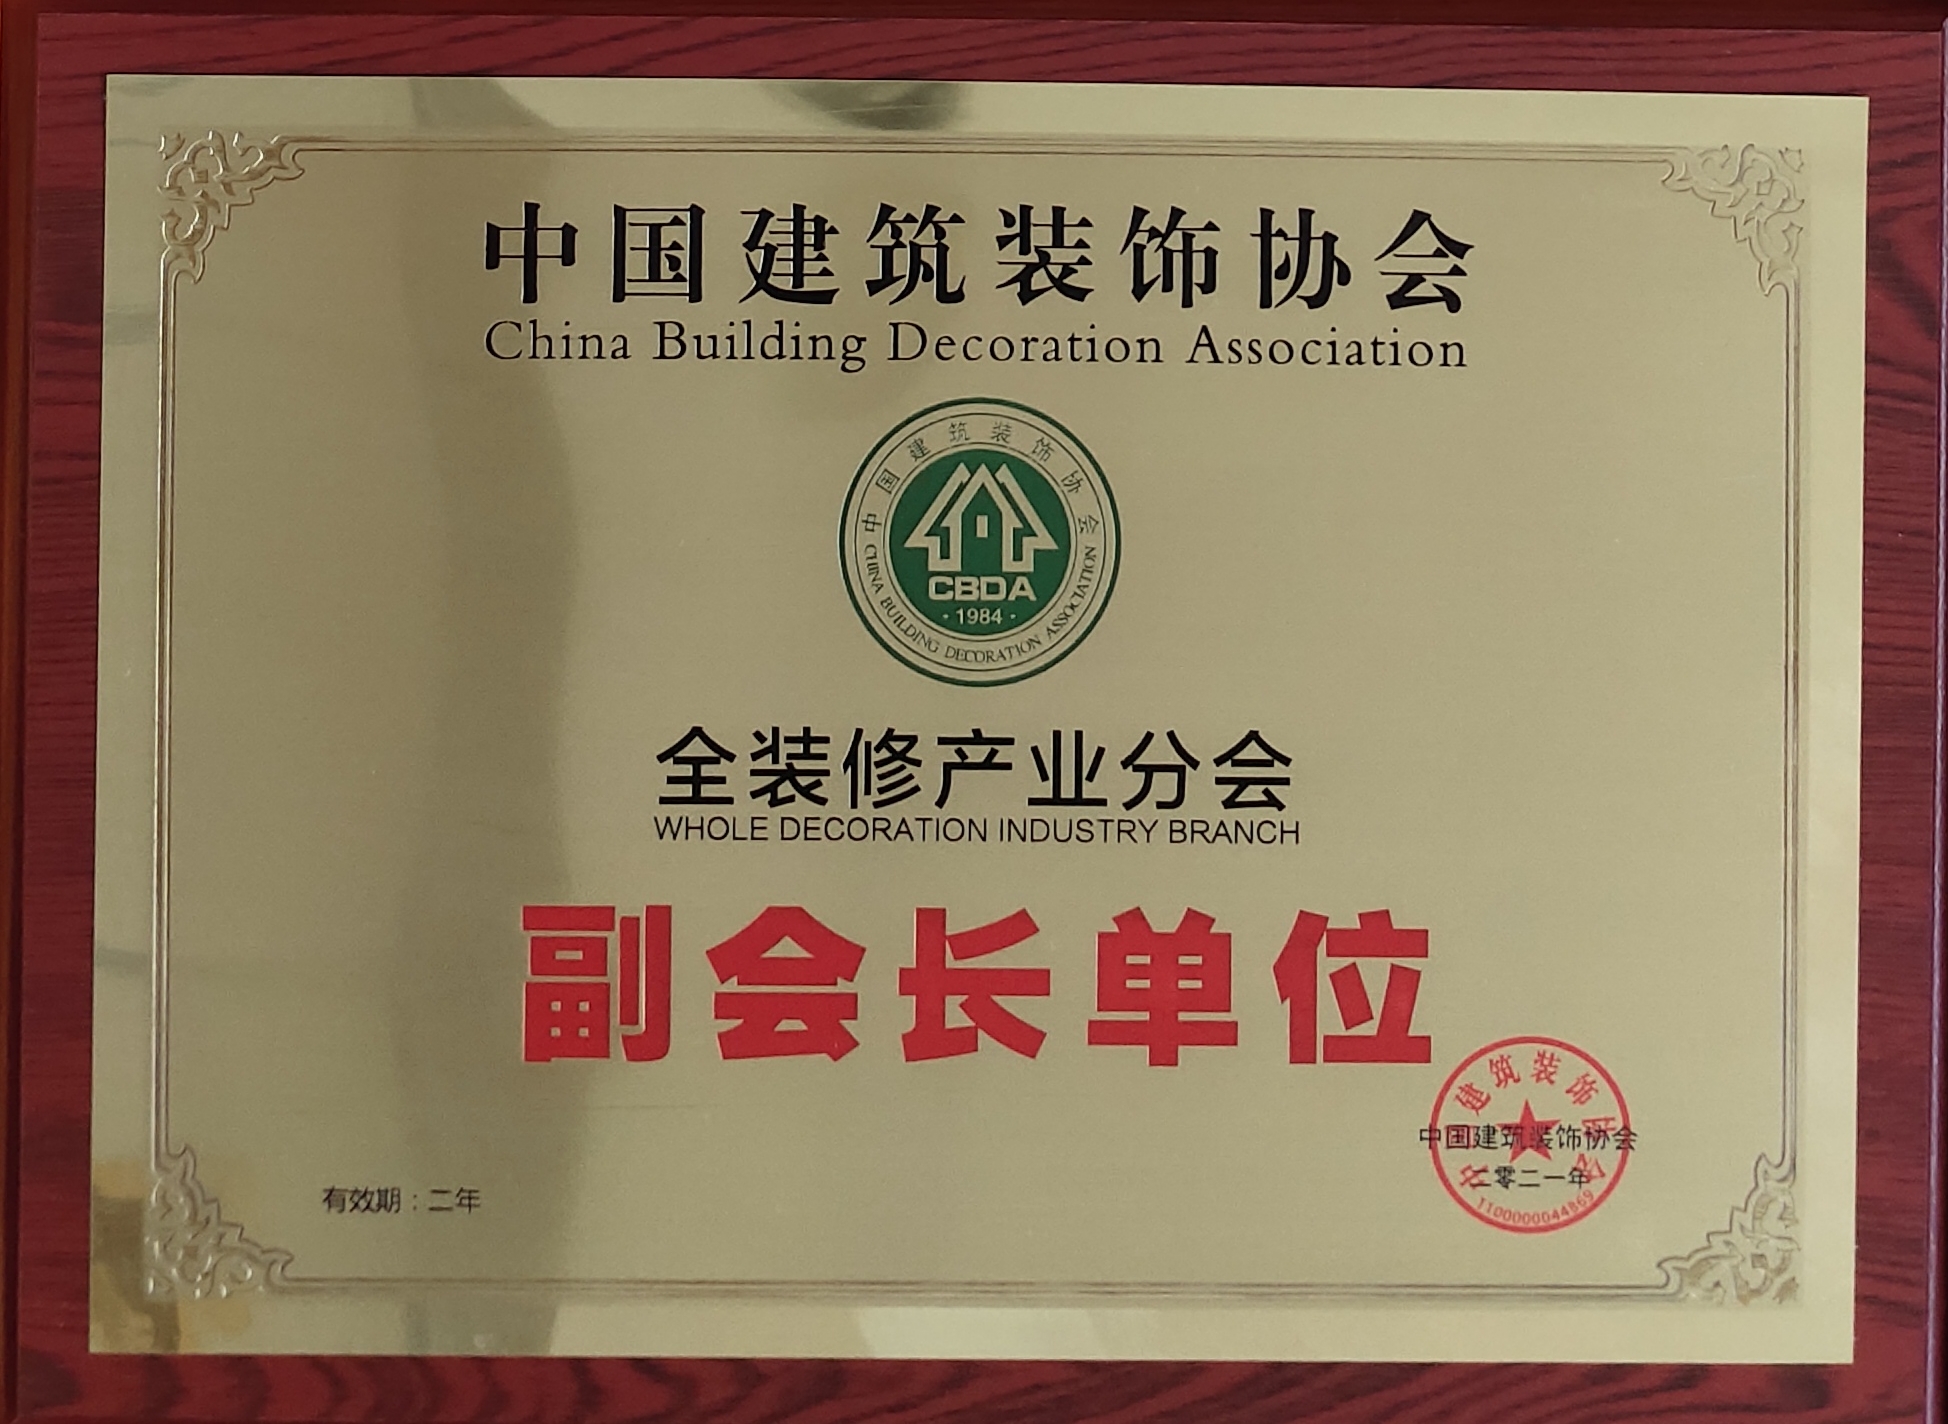 中国建筑装饰协会全装修产业分会副会长单位